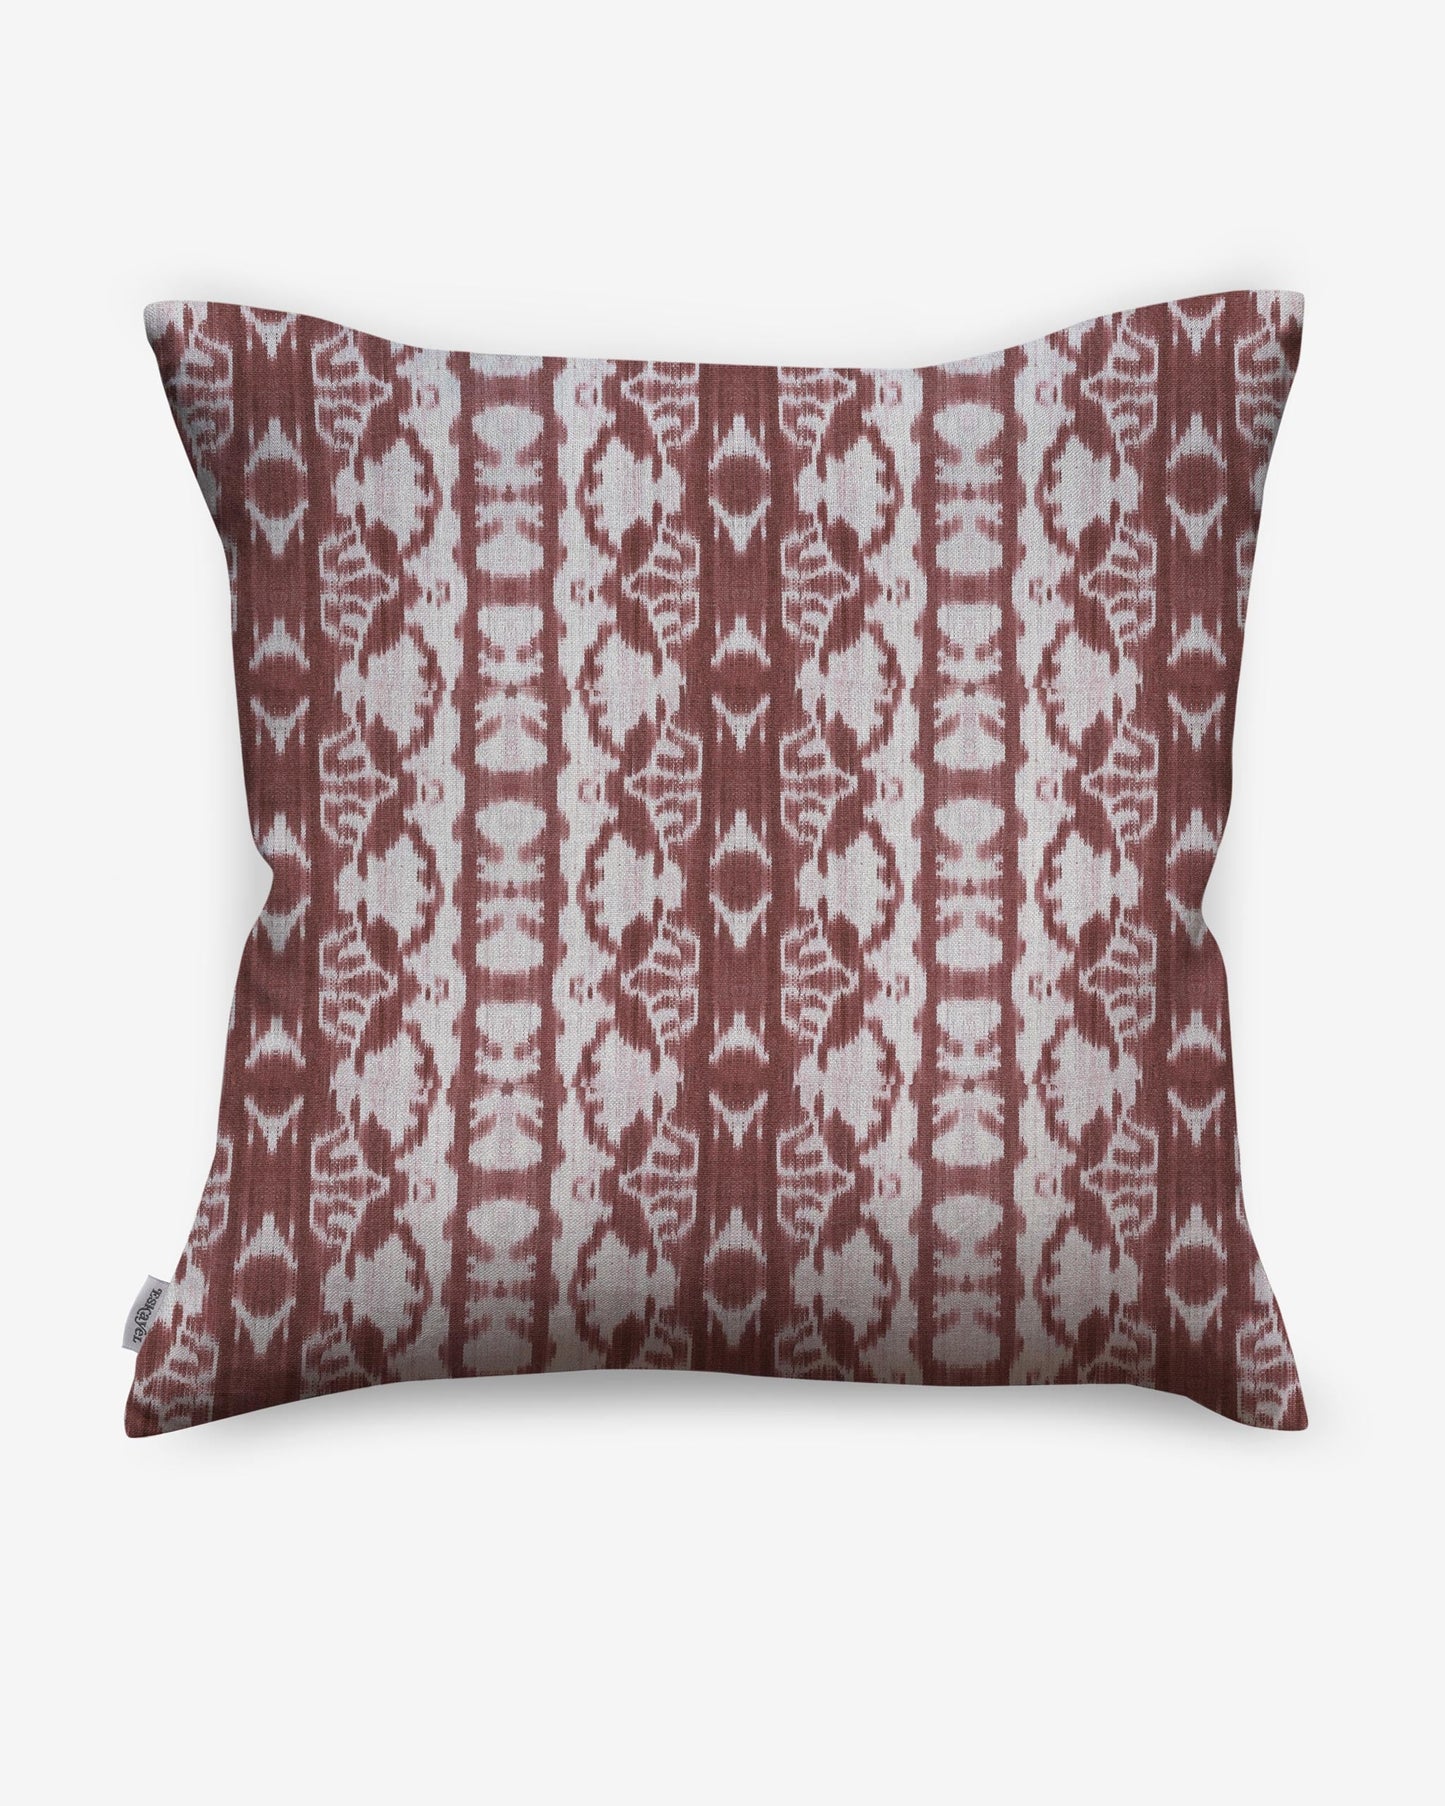 A Bali Stripe Pillow with a Bali Stripe pattern